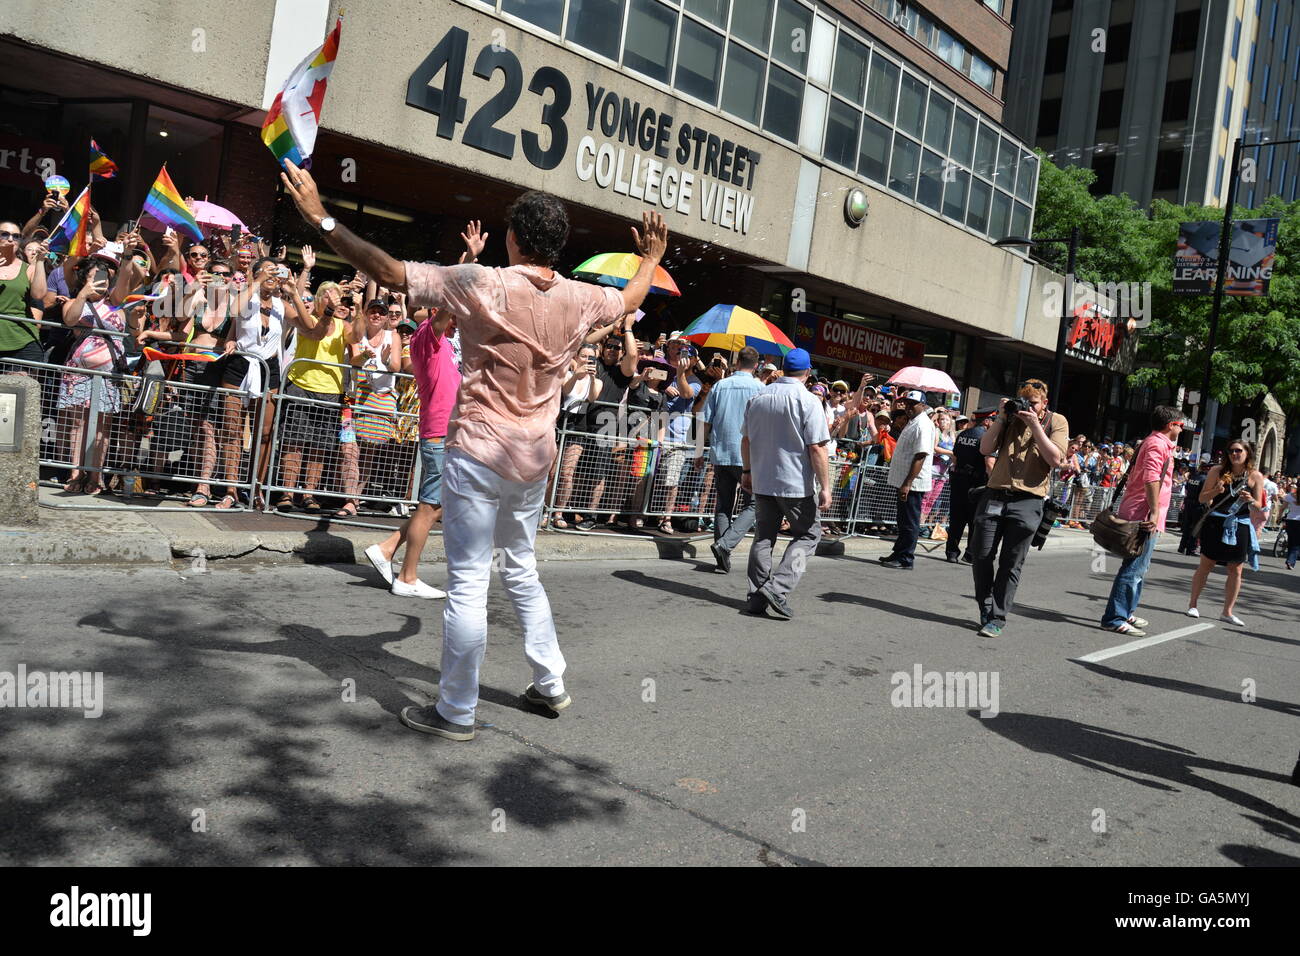 Toronto, Canada. 3 juillet, 2016. Le premier ministre du Canada, Justin Trudeau participe au défilé annuel Pride Festival, le 3 juillet 2016 à Toronto, Ontario, Canada. Premier ministre Justin Trudeau fera de l'histoire comme le premier premier ministre canadien à mars dans la Pride Parade. Credit : NISARGMEDIA/Alamy Live News Banque D'Images